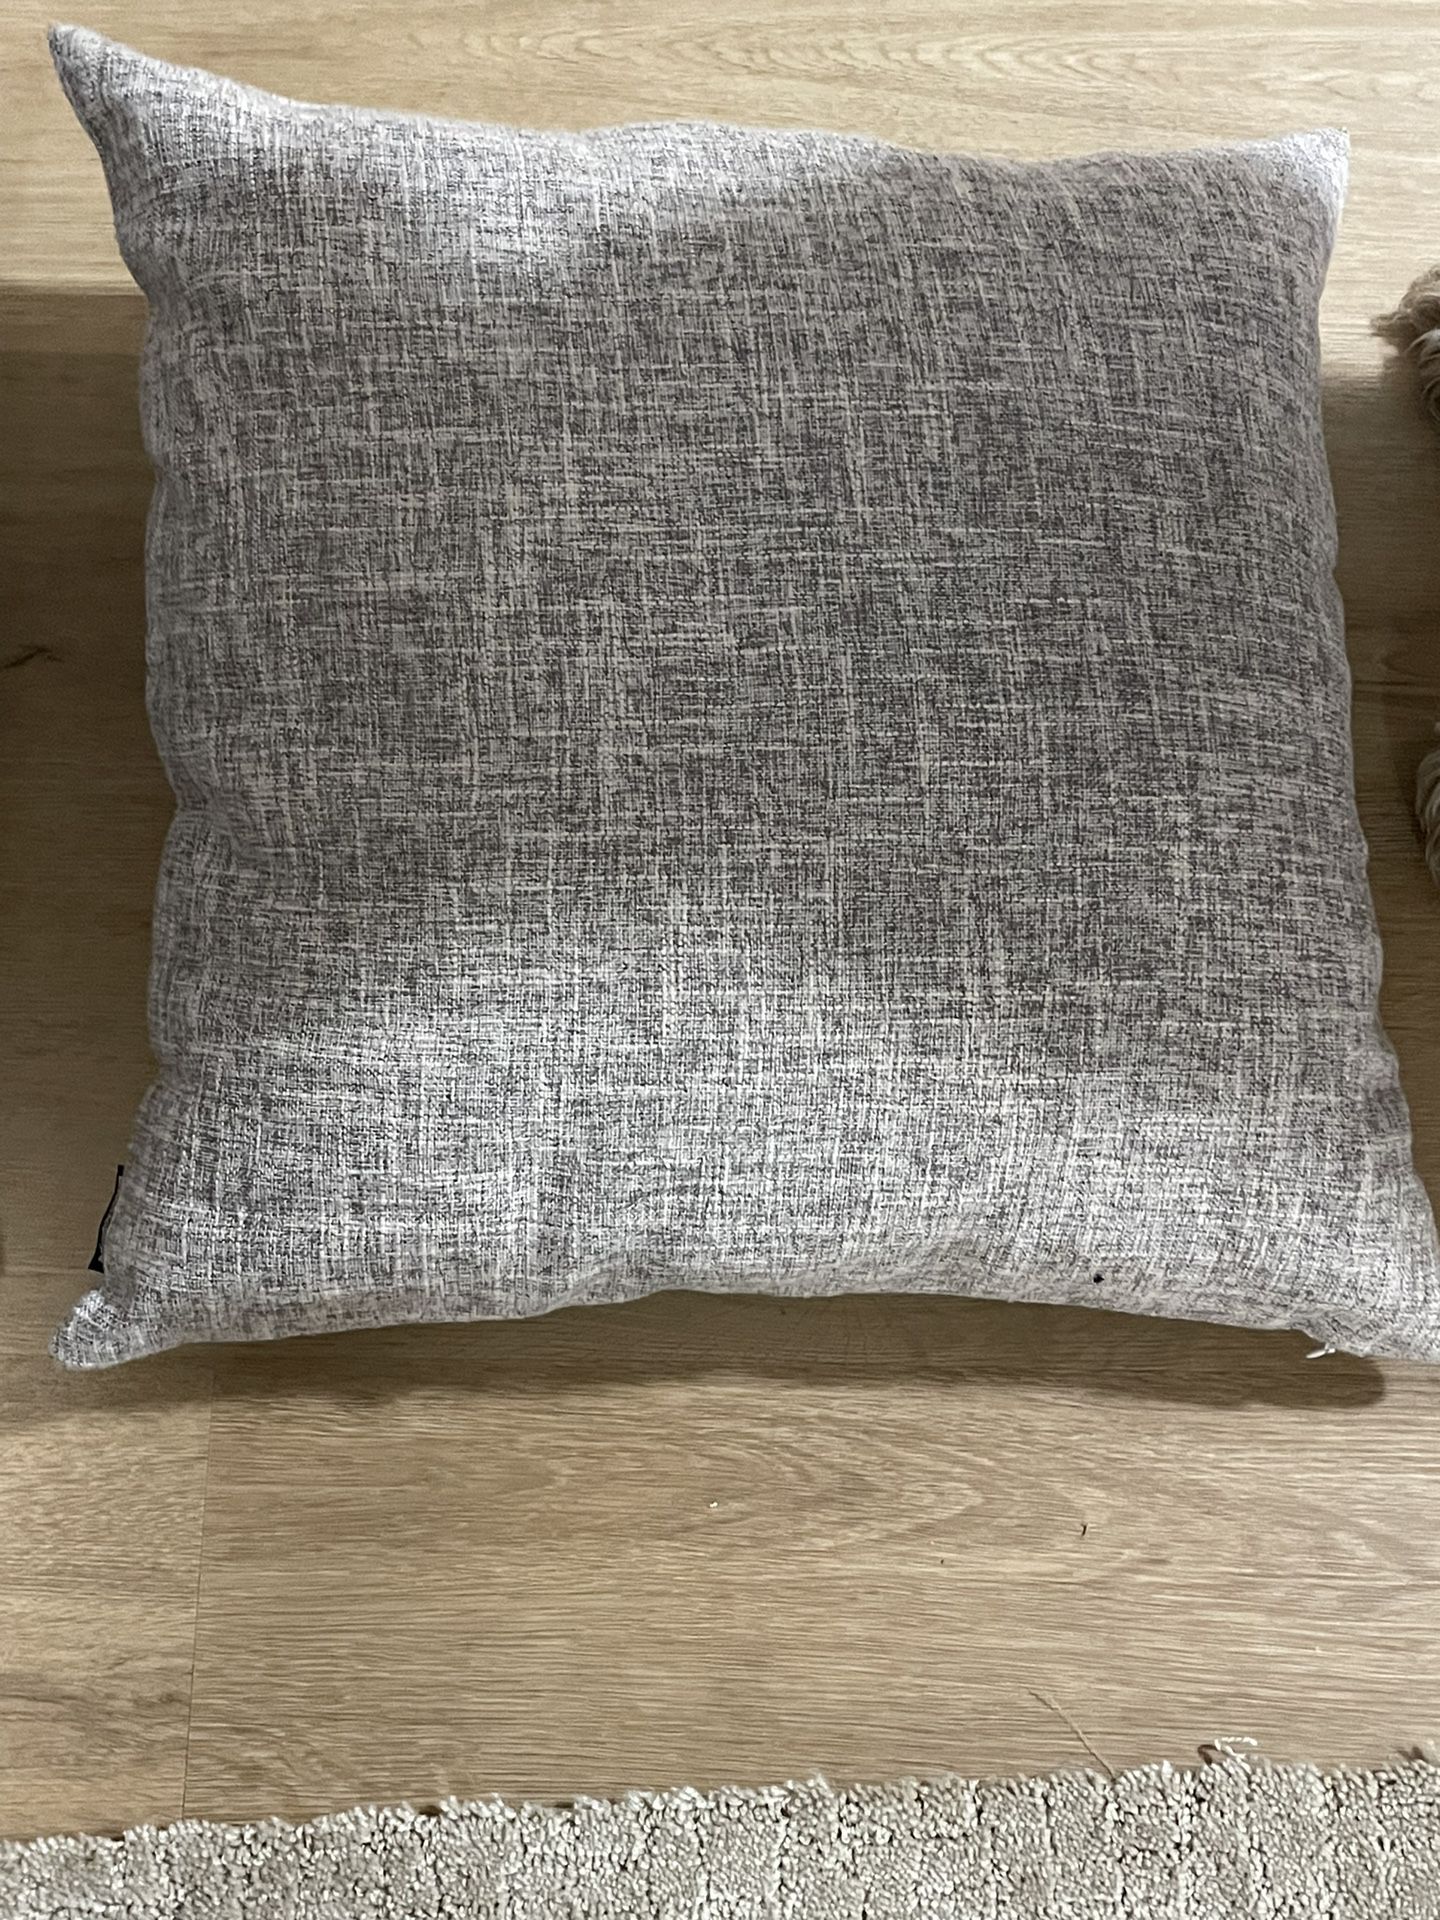 2 Gray Throw Pillows